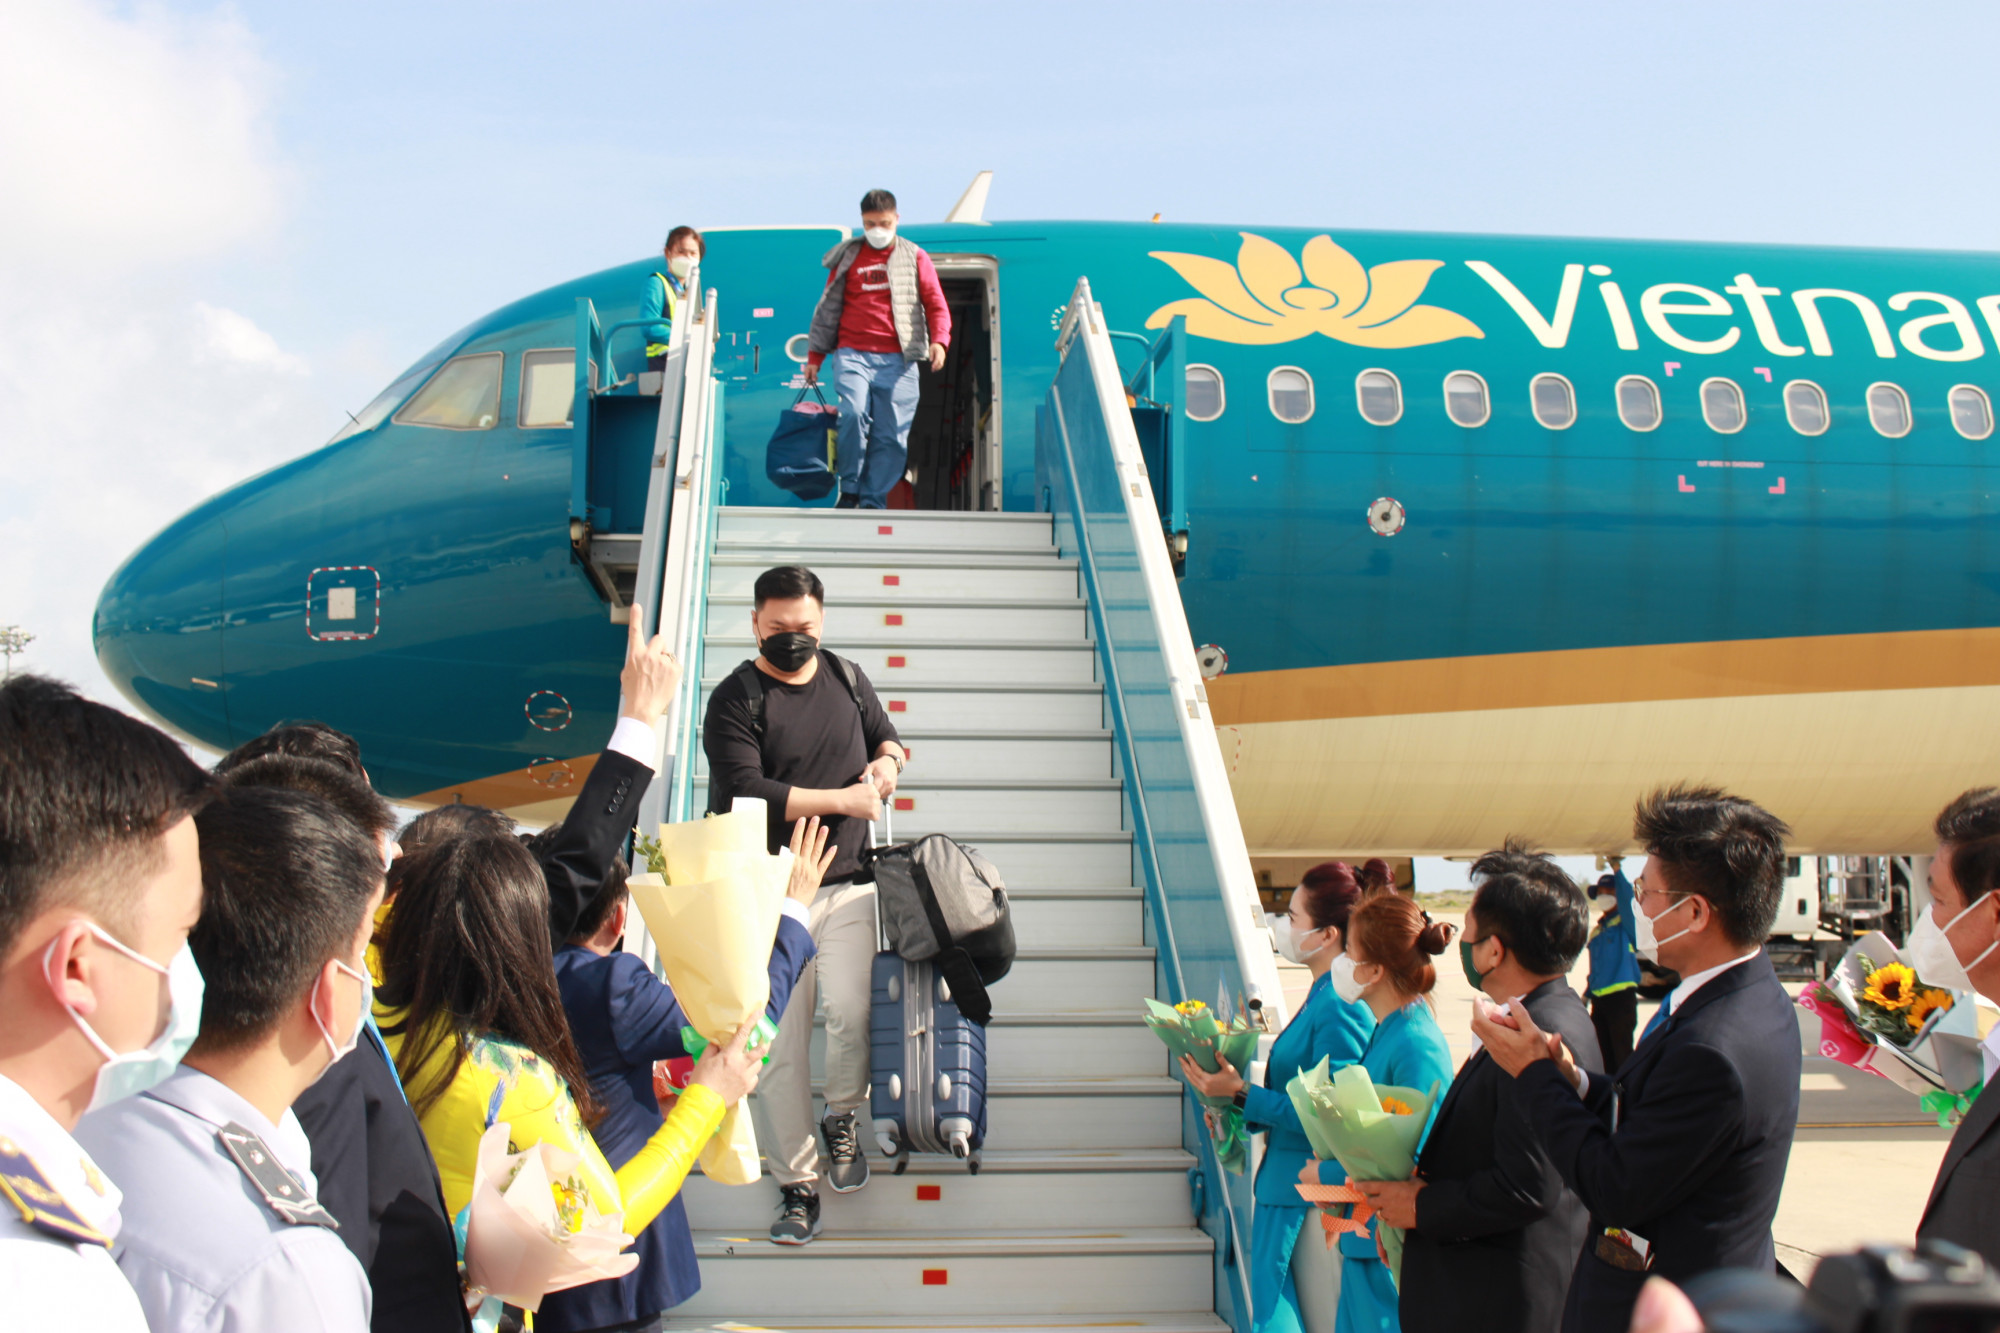 Chào đón các vị khách đầu tiên đến với Nha Trang - Khánh Hòa trong dịp Tết Nguyên đán 2022